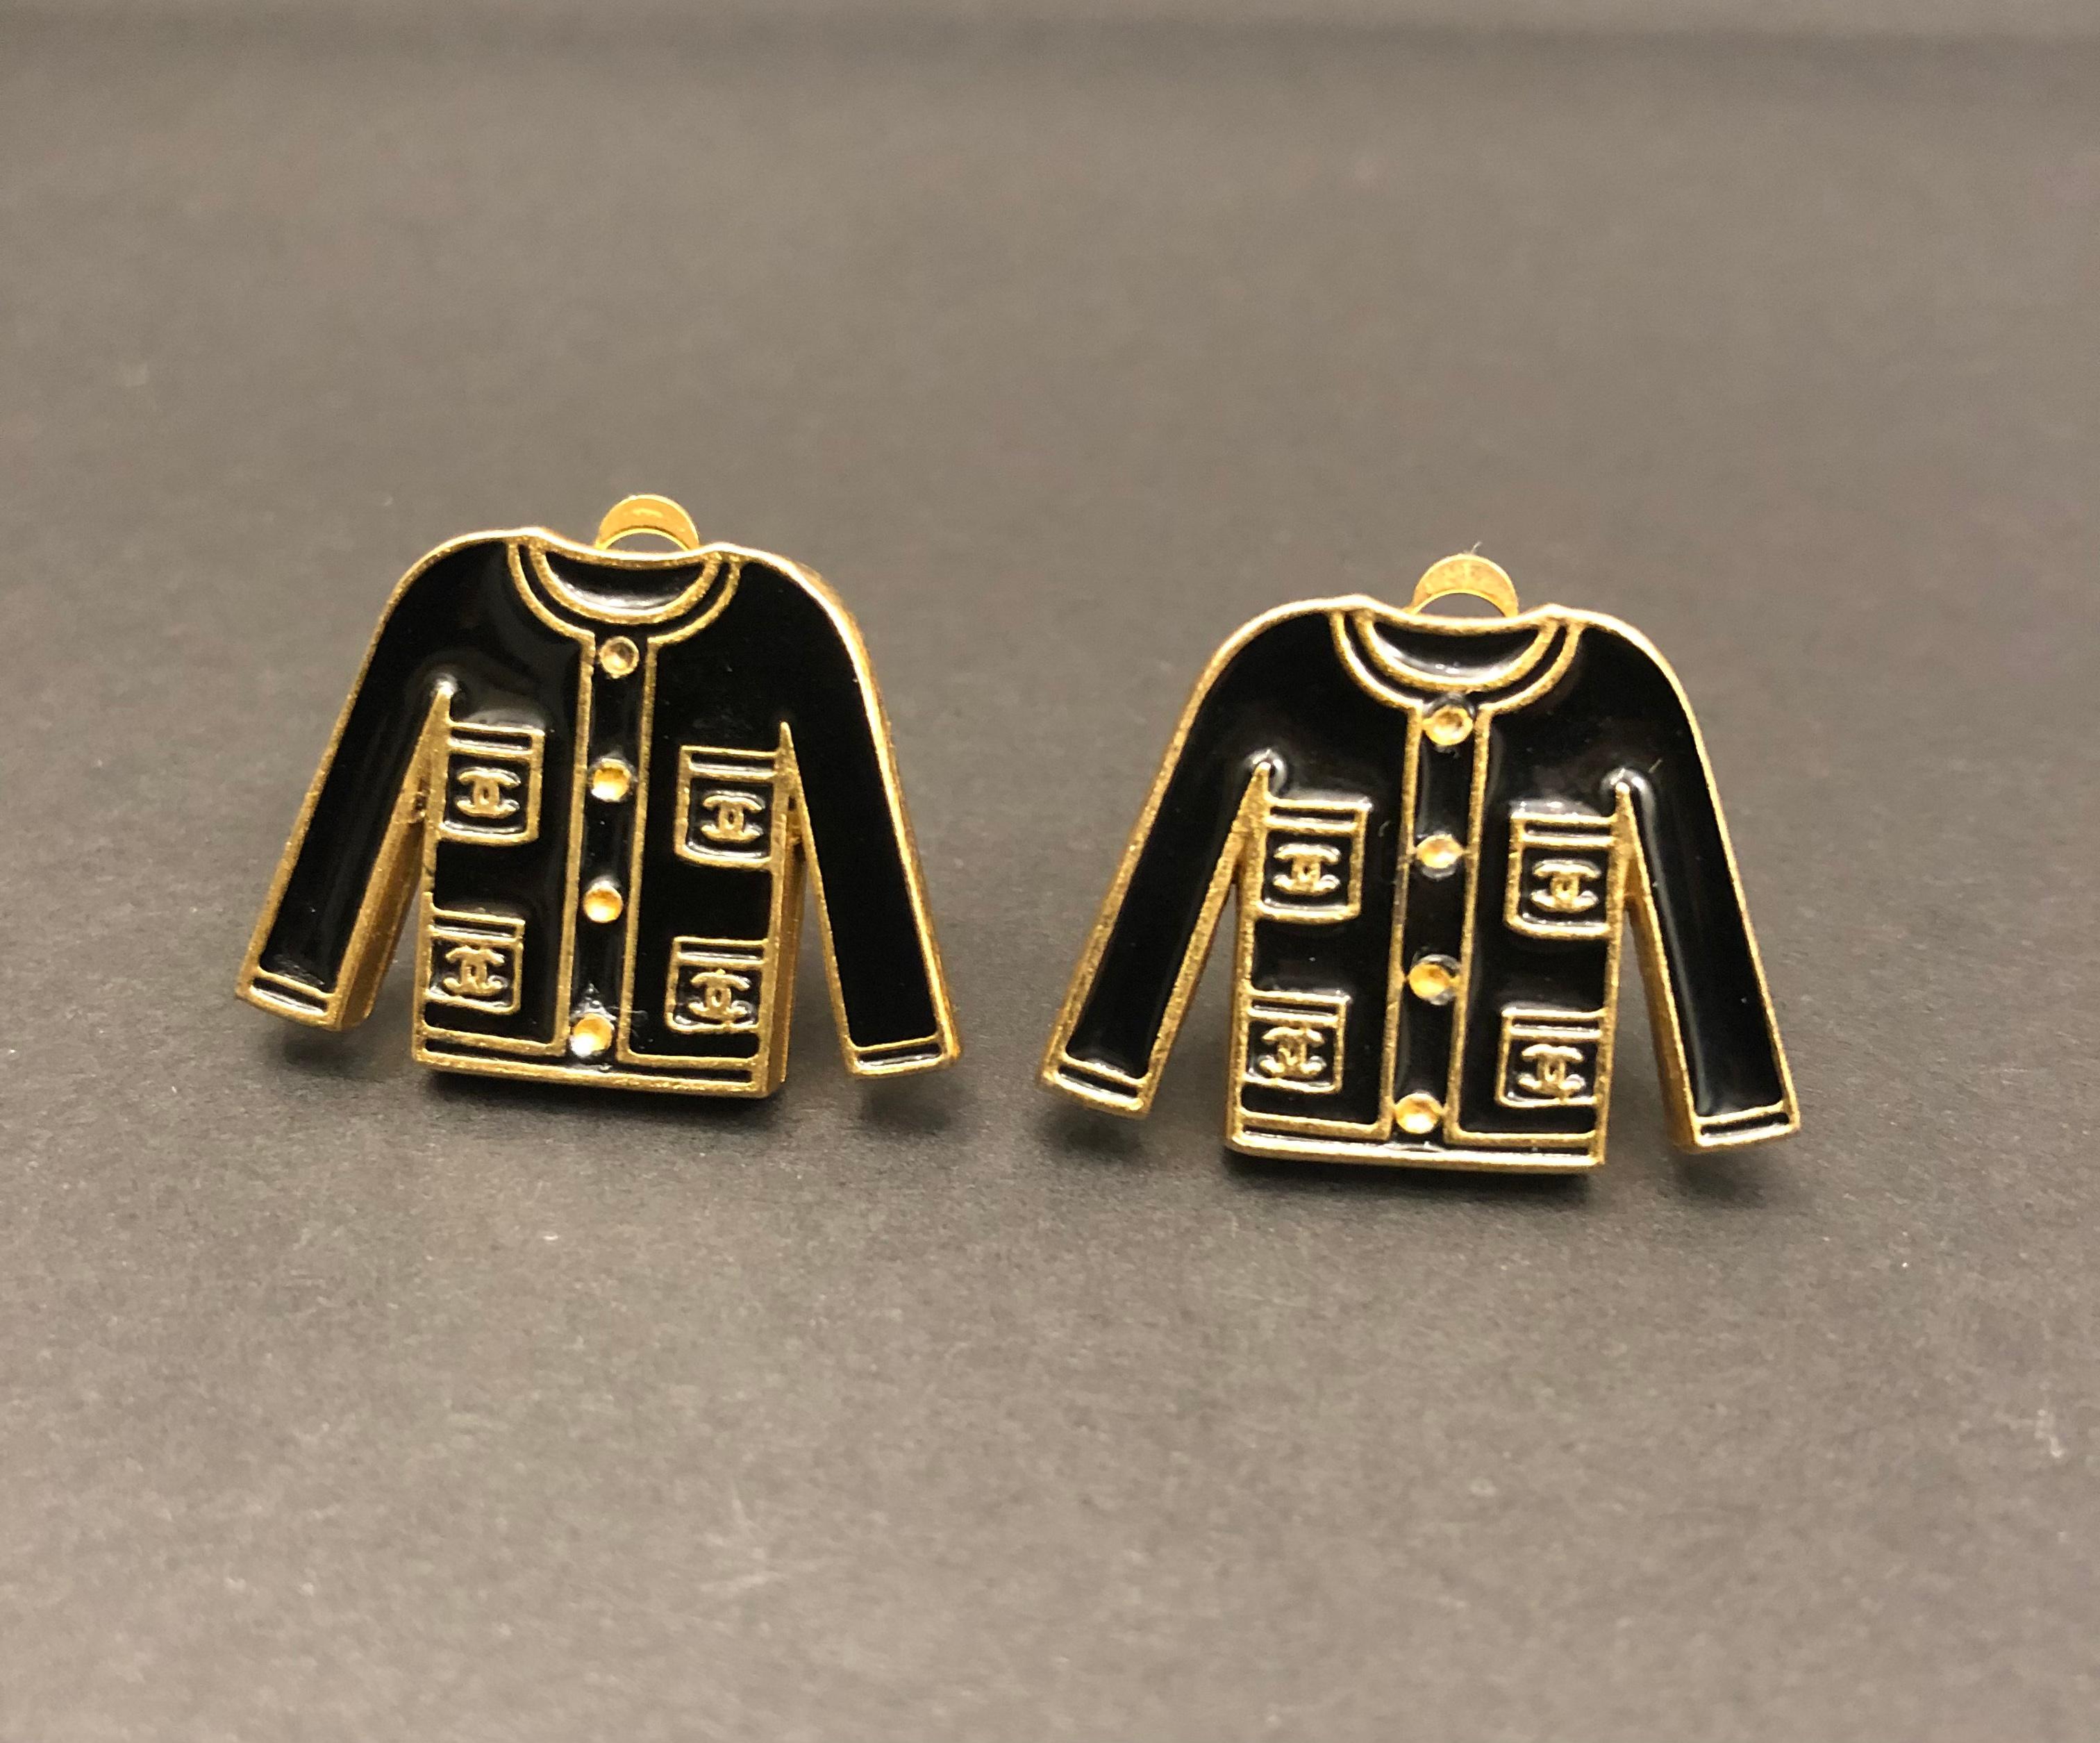 Ces boucles d'oreilles vintage CHANEL sont composées de métal doré et d'émail noir dans le motif de la veste Chanel. Estampillé Chanel 02A fabriqué en France. Mesure environ 2,6 x 1,9 cm. Style clip-on. Livré avec boîte. 

Condit : Très bon état